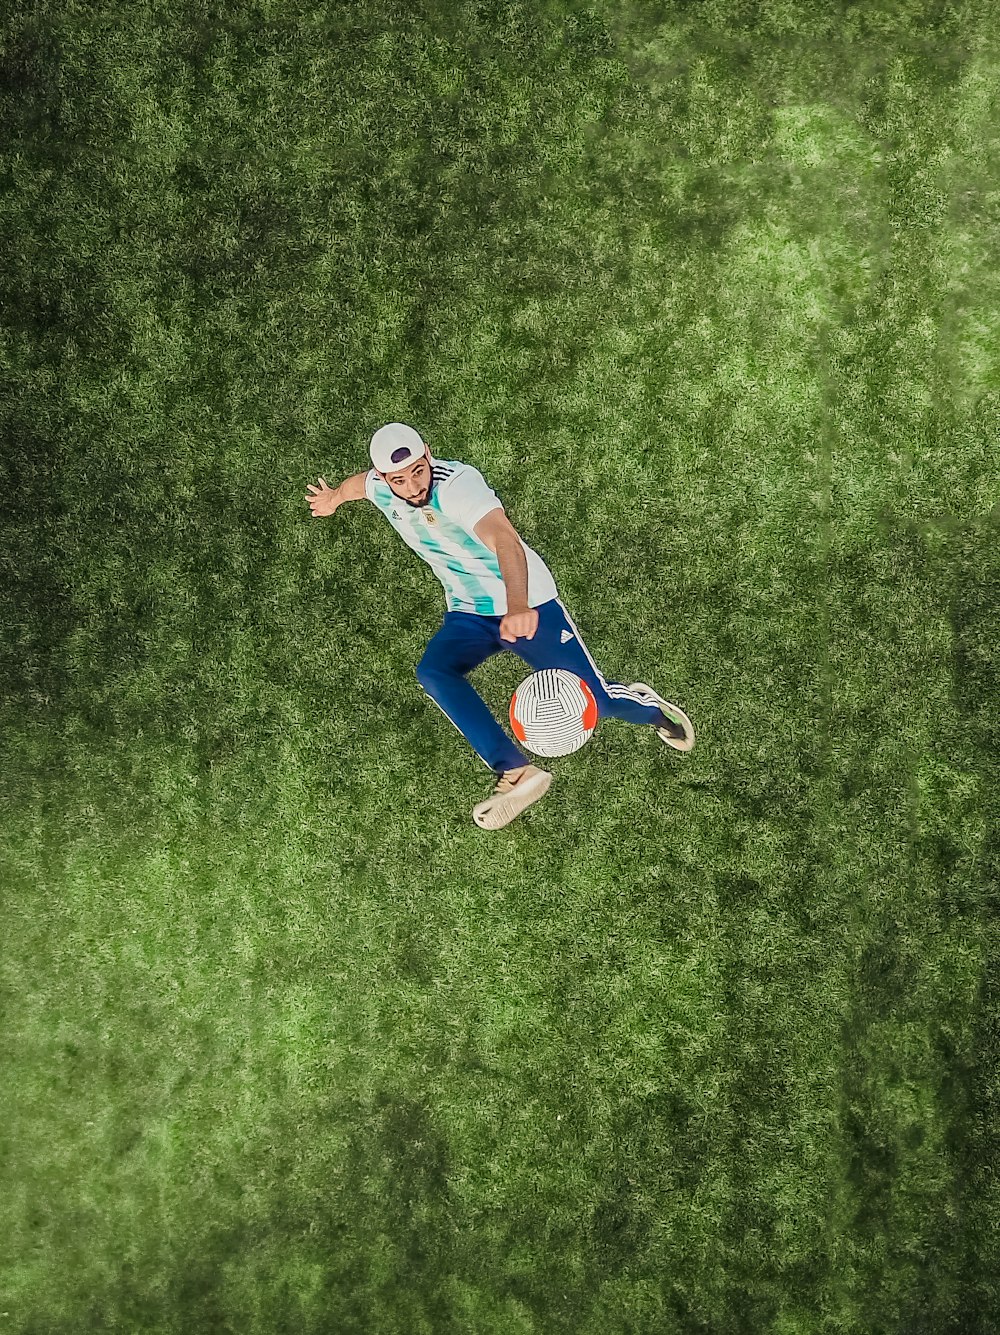 Vista aérea do homem jogando bola de futebol na grama